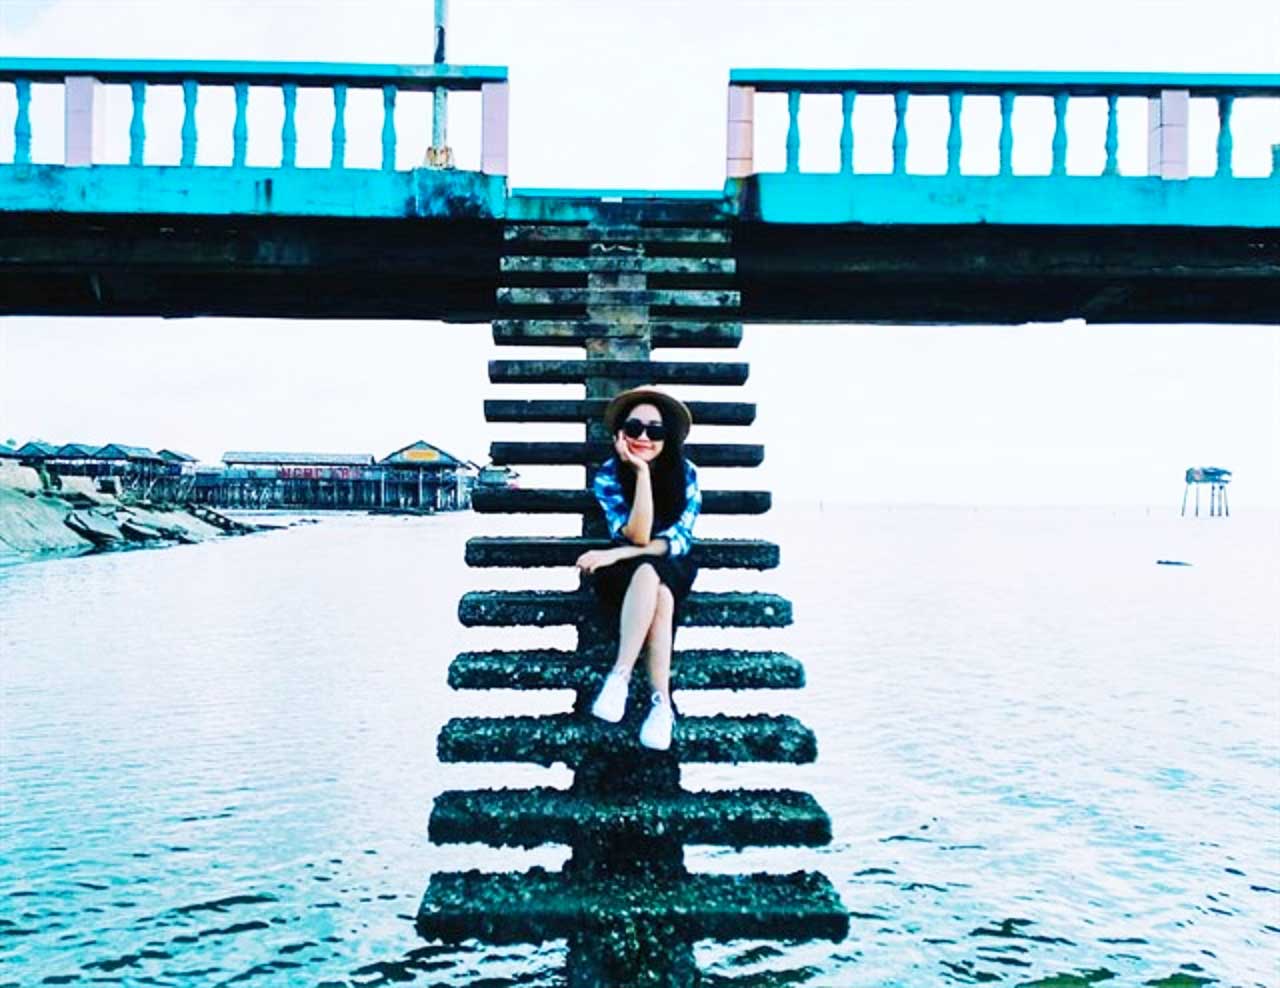 Chụp ảnh độc đáo tại cầu tàu biển Tân Thành